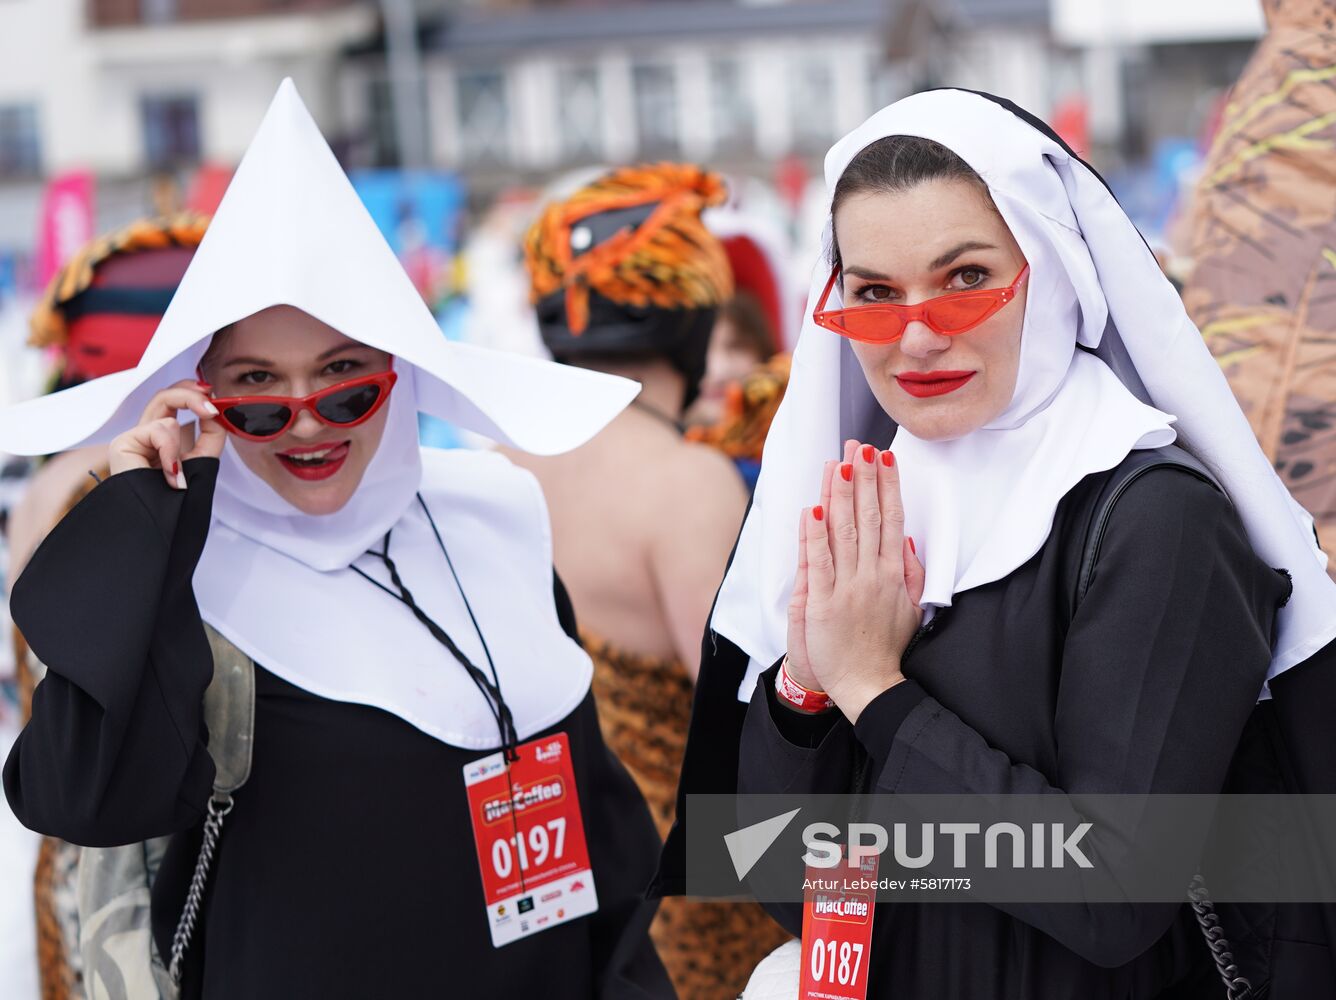 Russia Alpine Carnival